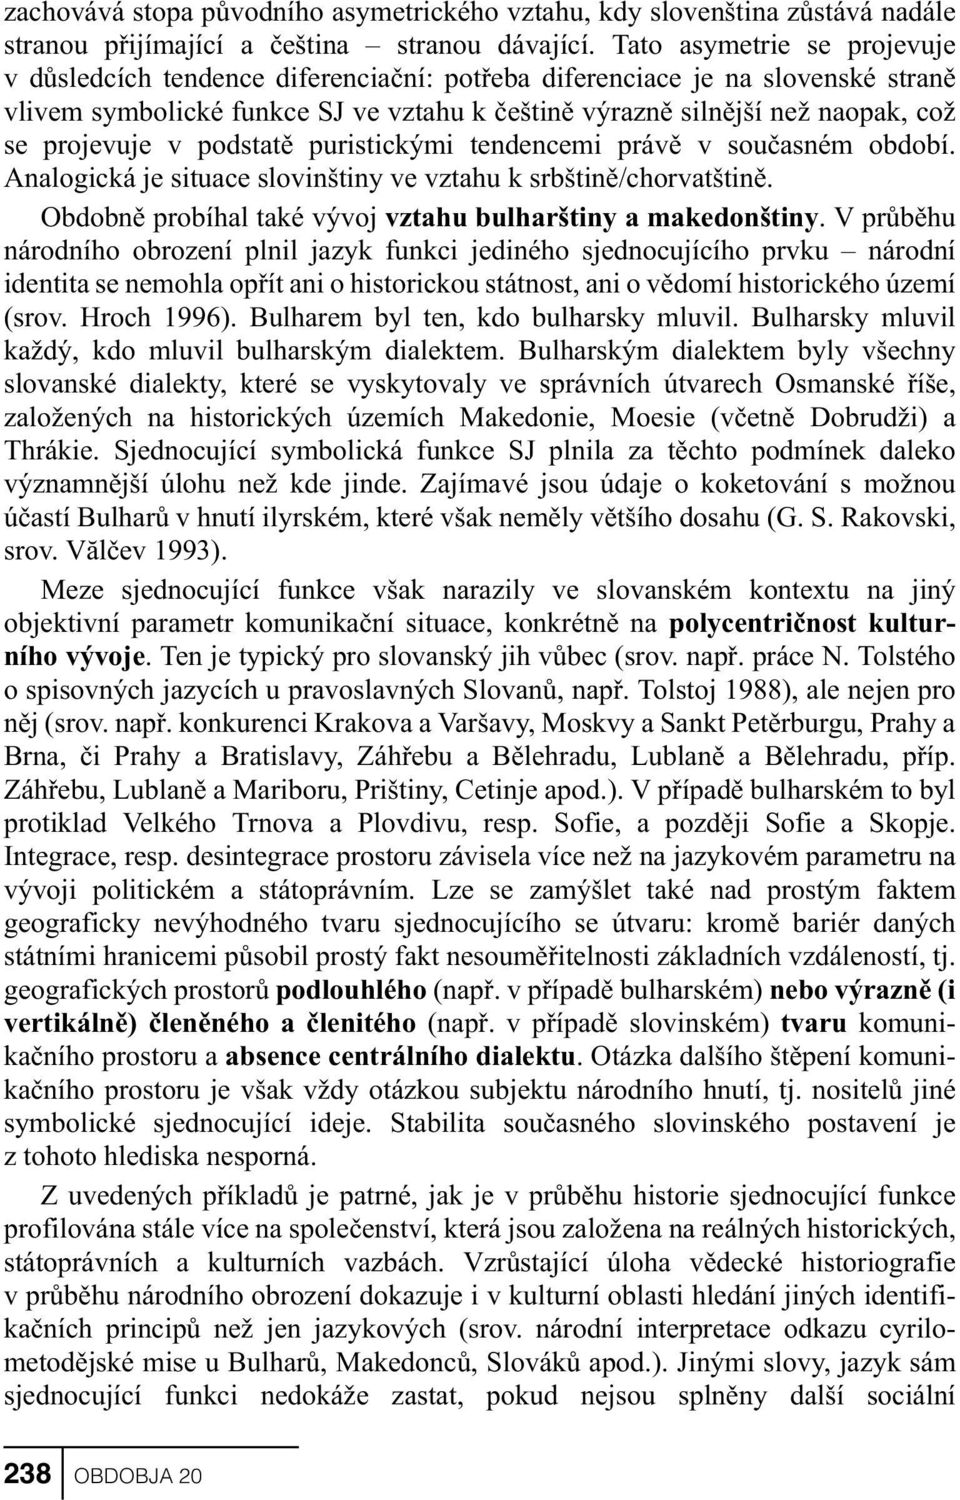 projevuje v podstatì puristickými tendencemi právì v souèasném období. Analogická je situace slovinštiny ve vztahu k srbštinì/chorvatštinì.